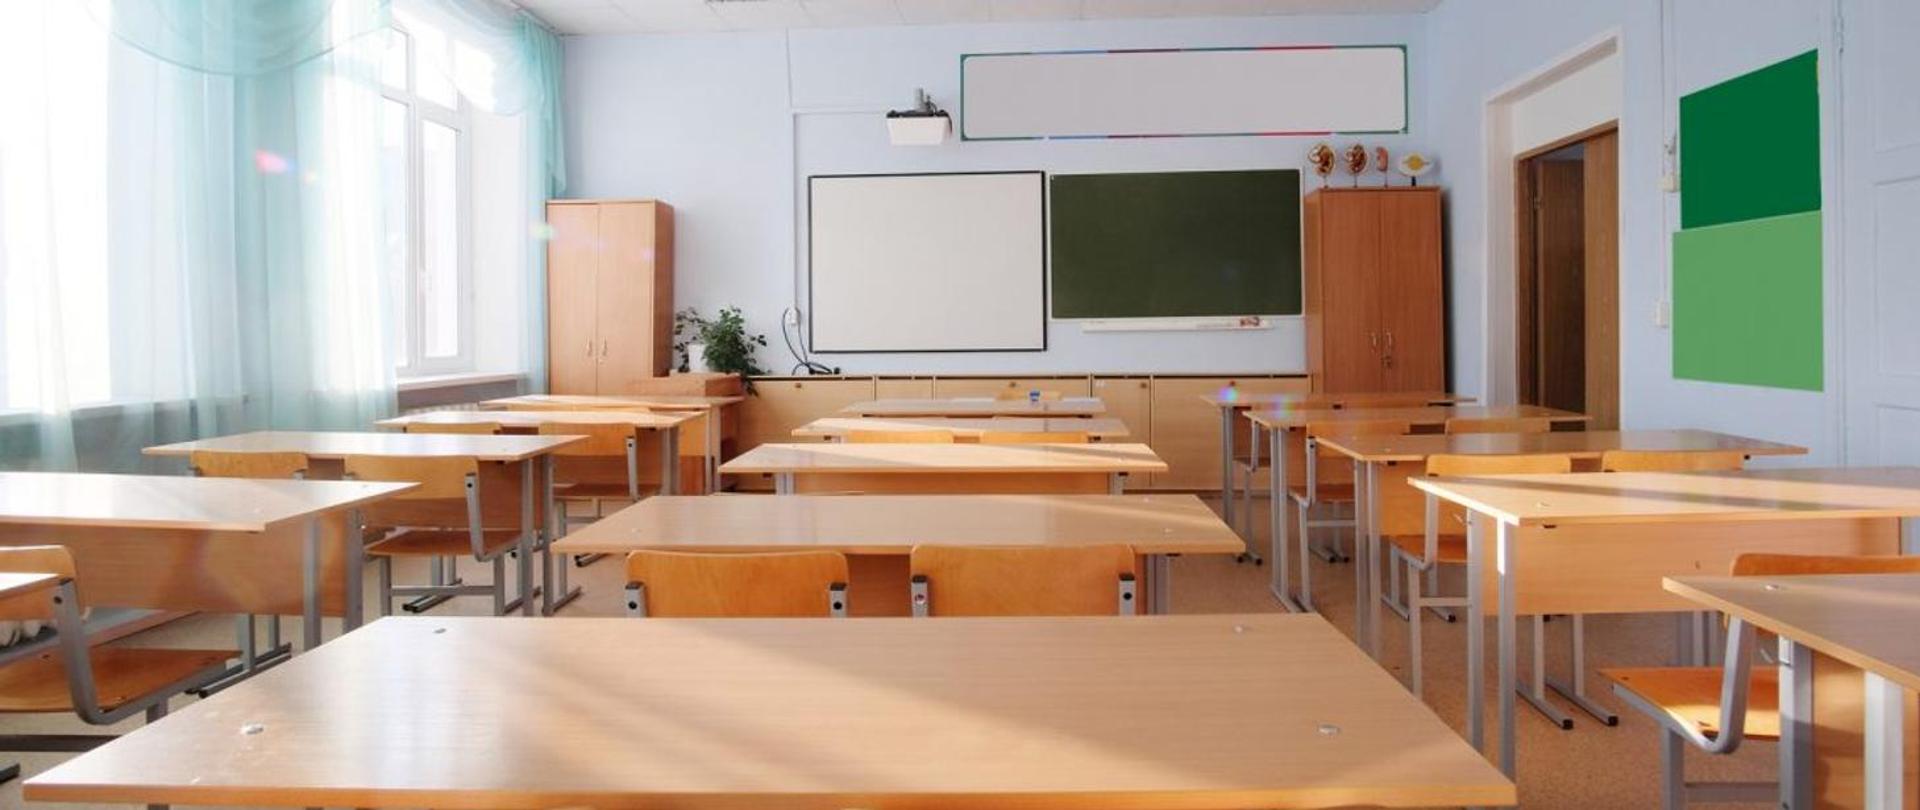 Zdjęcie przedstawia klasę szkolną, w której stoją ławki oraz krzesła, a także wiszą dwie tablice.